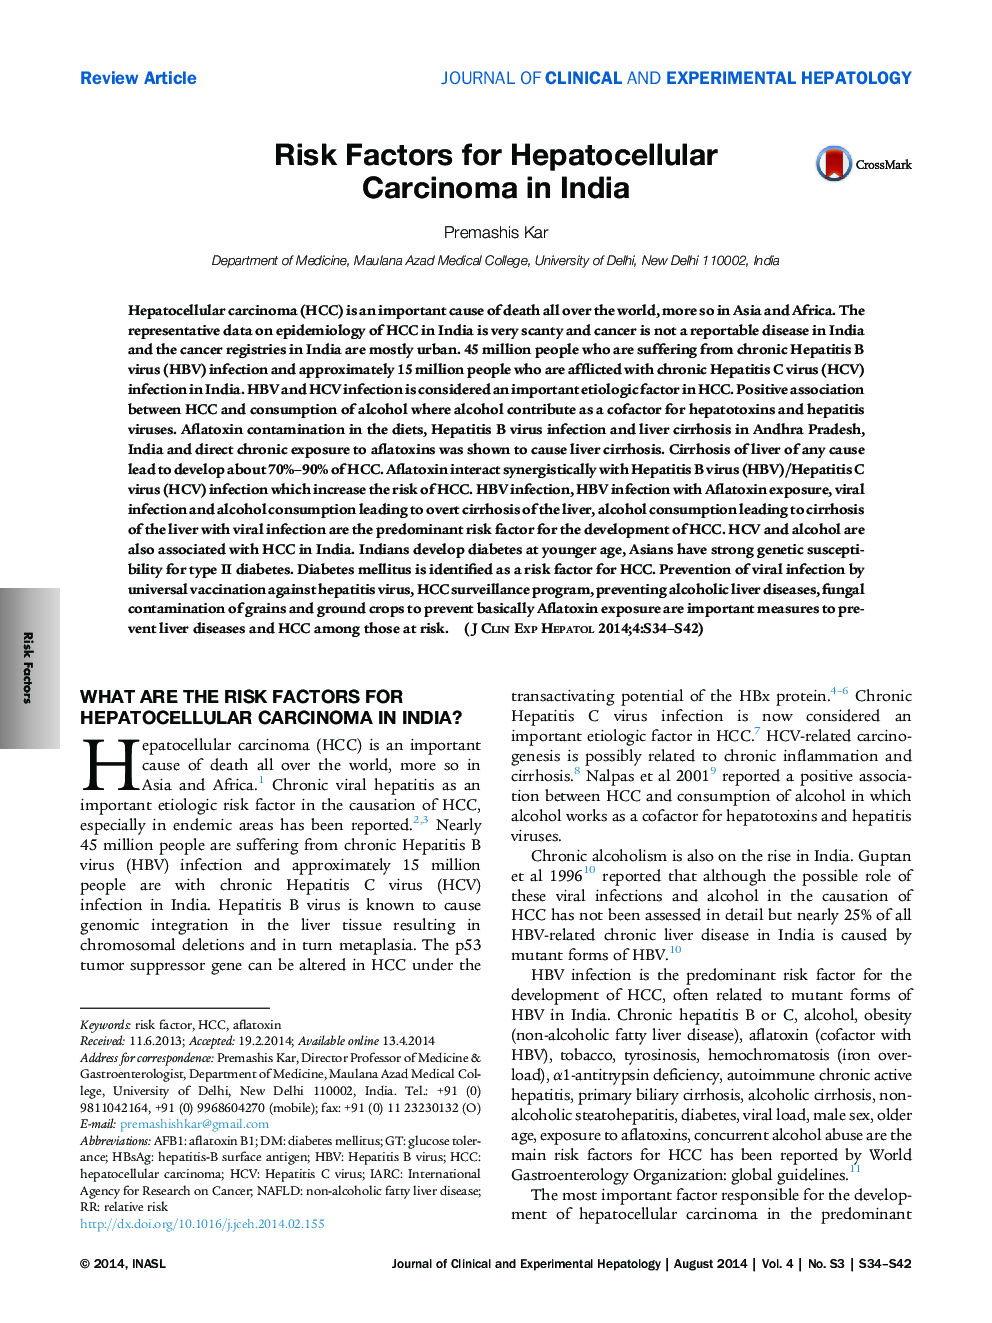 عوامل خطر برای کارسینوم سلول های خونی در هند 